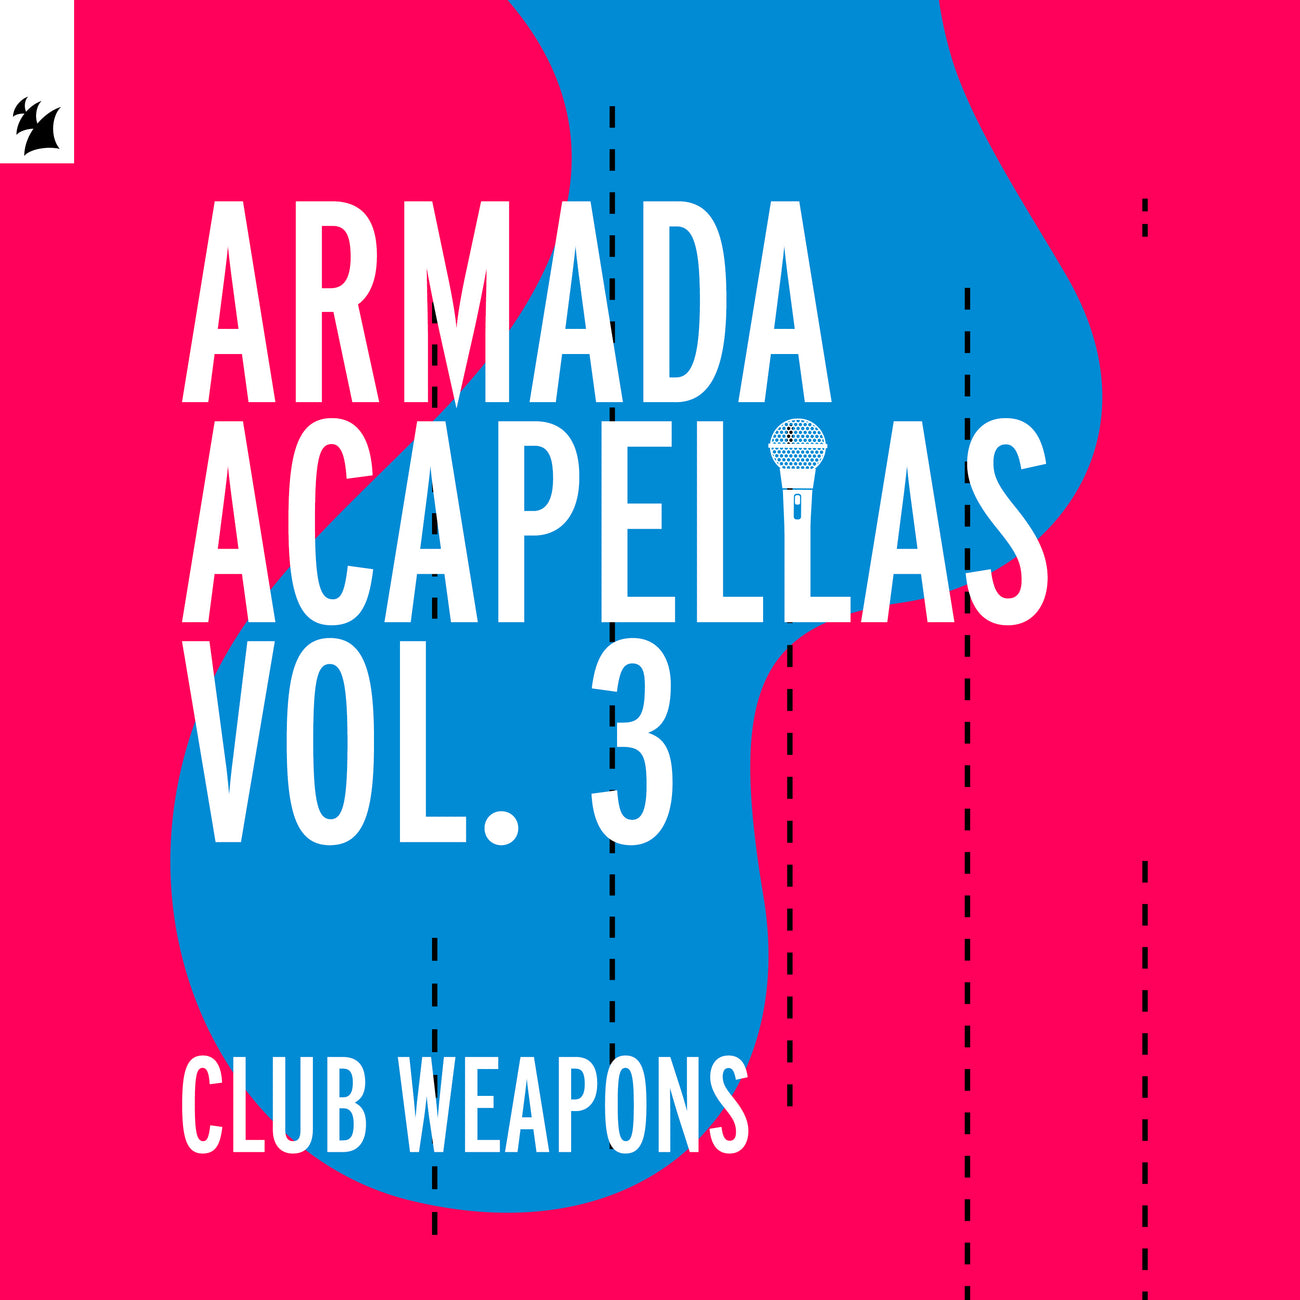 Armada Acapellas Vol. 3 - Club Weapons